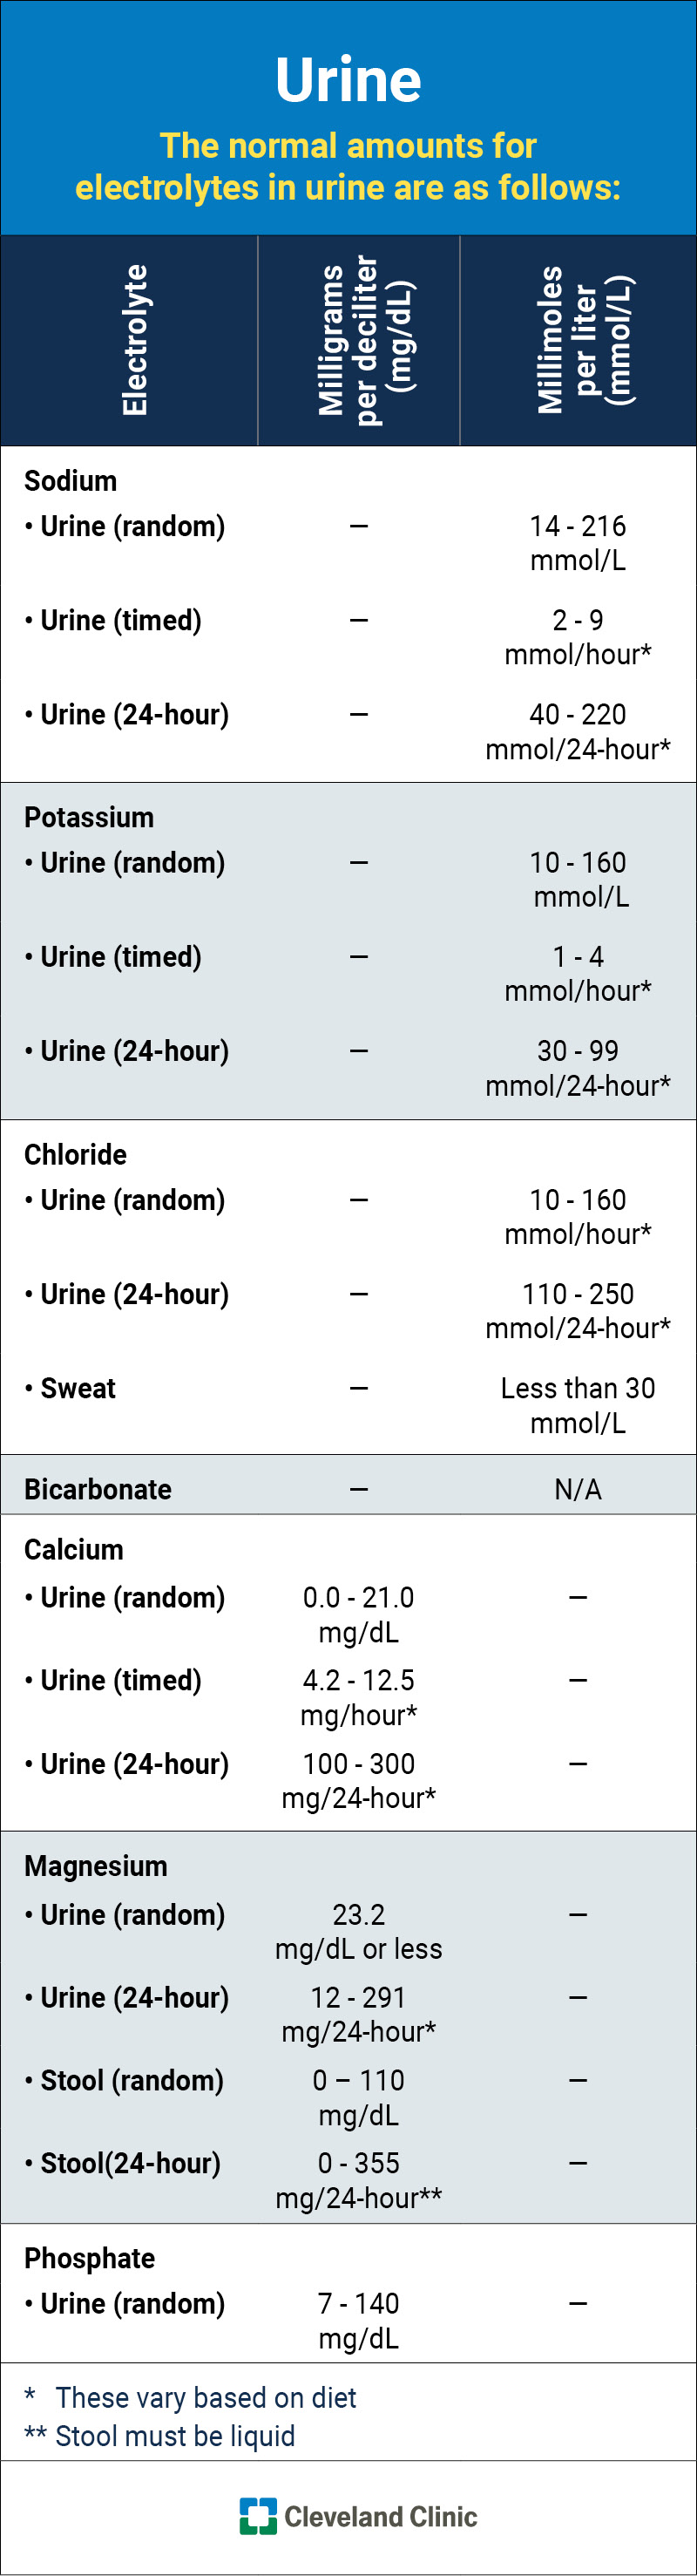 Quantità normali (tipiche) di ciascun elettrolita nelle urine, elencate in milliequivalenti, milligrammi e millimoli.